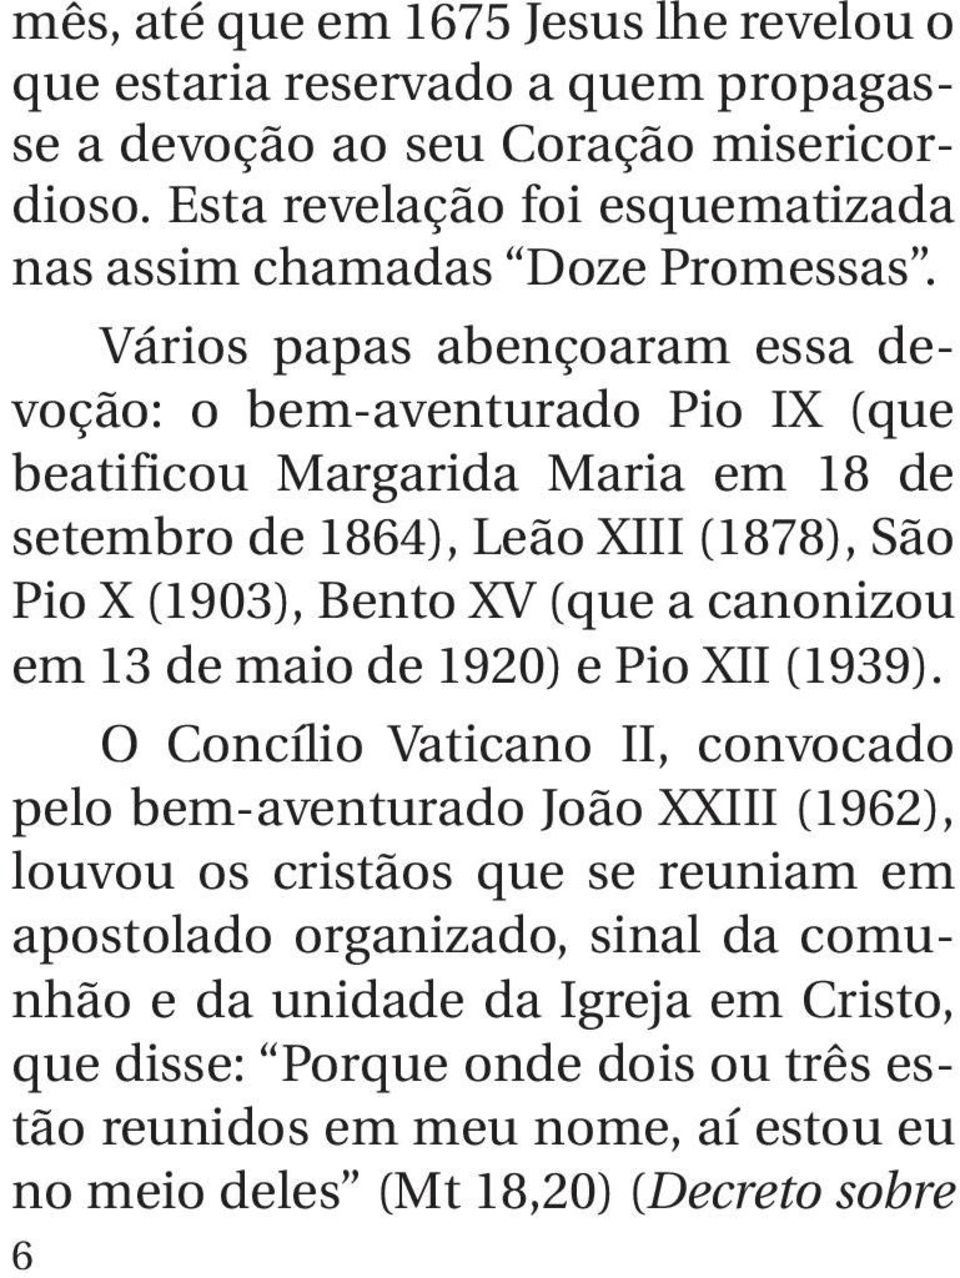 Vários papas abençoaram essa devoção: o bem-aventurado Pio IX (que beatificou Margarida Maria em 18 de setembro de 1864), Leão XIII (1878), São Pio X (1903), Bento XV (que a